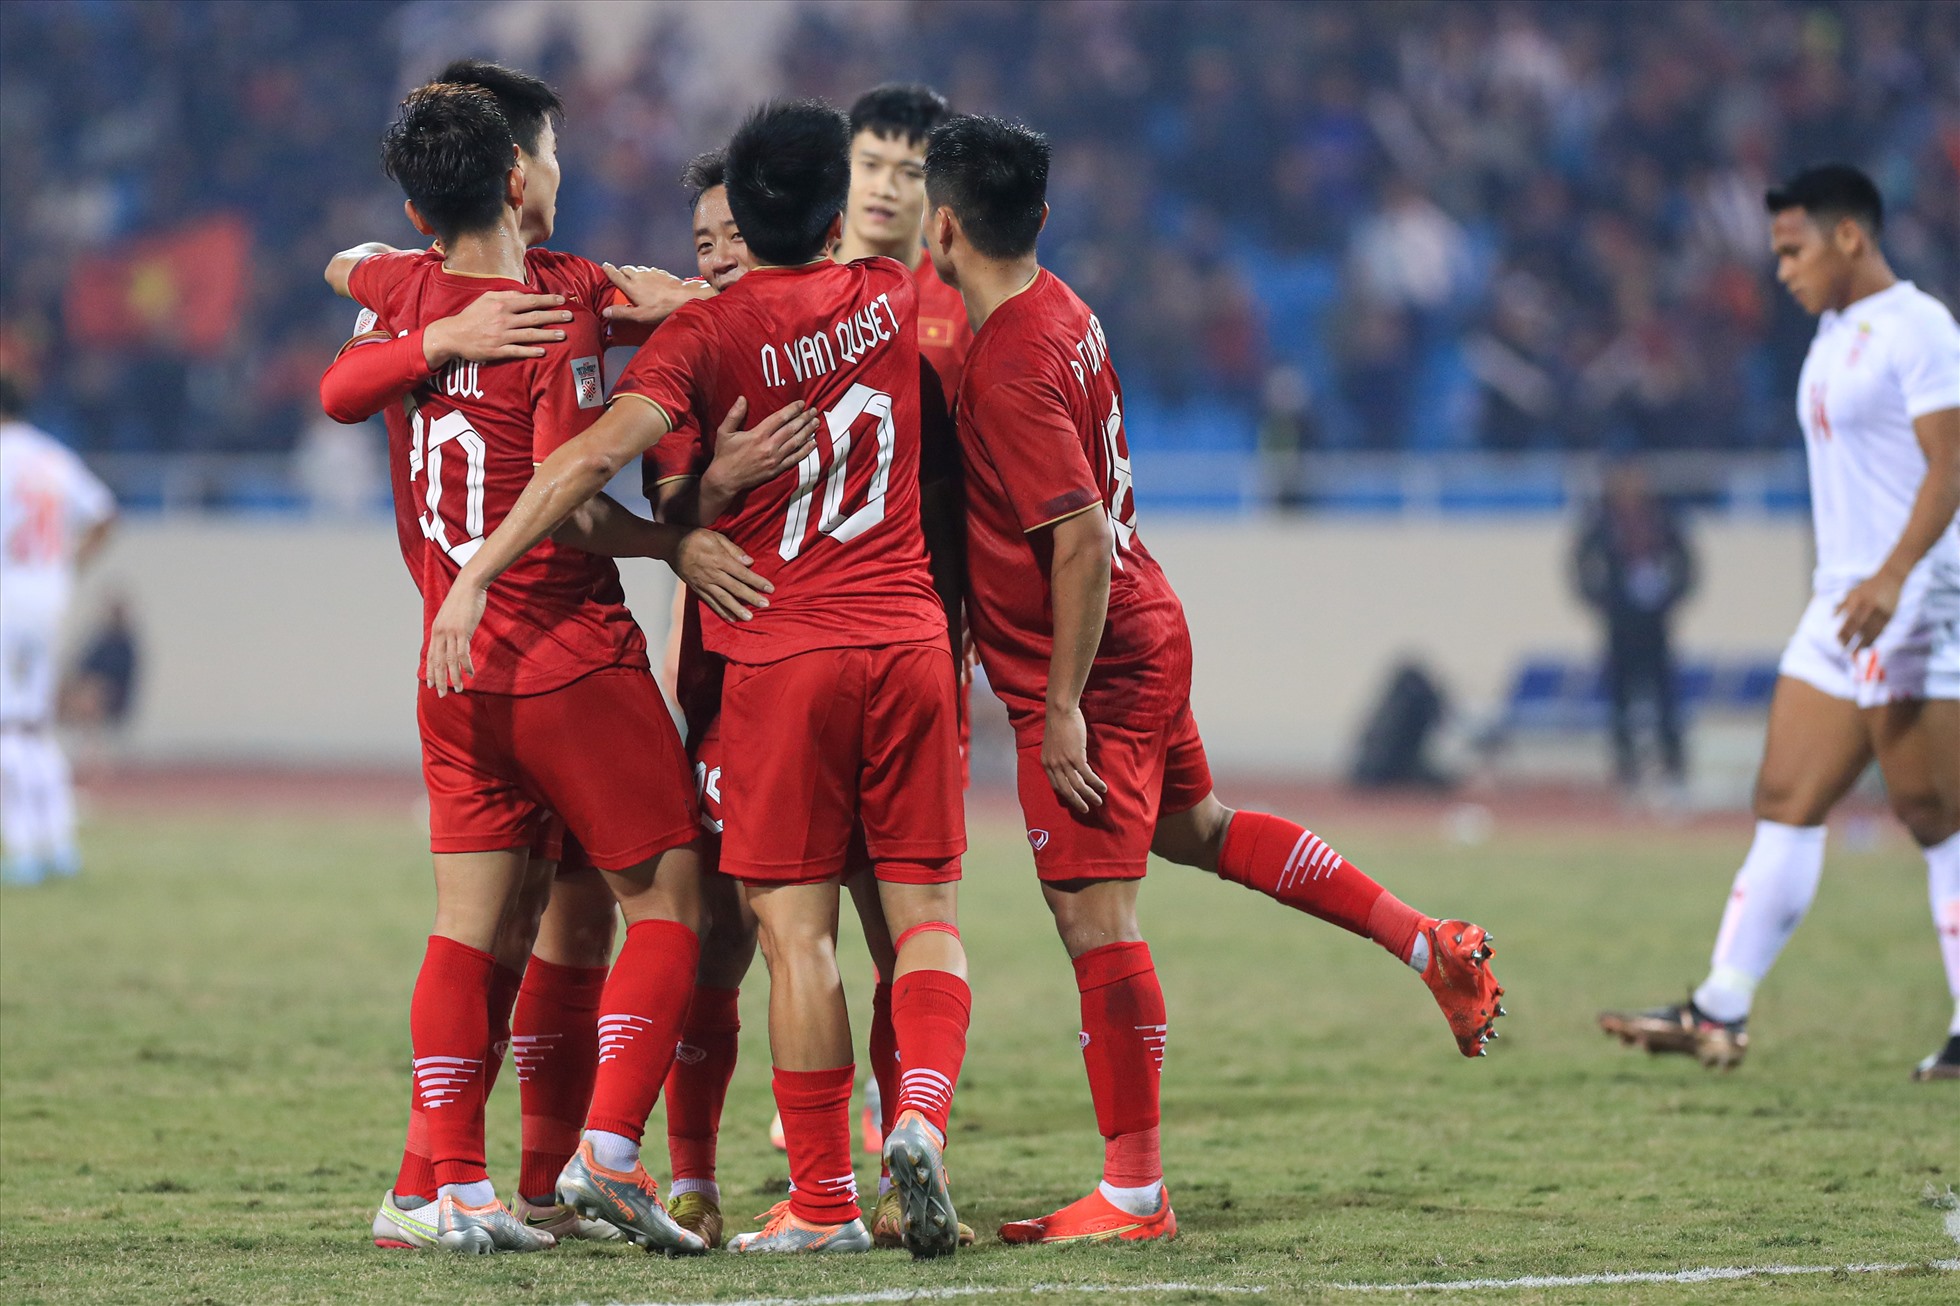 Kết quả này giúp đội tuyển Việt Nam lọt vào bán kết AFF Cup 2022 với ngôi đầu bảng B. Đối thủ ở trận chung kết lượt đi của thầy trò huấn luyện viên Park Hang-seo là Indonesia.